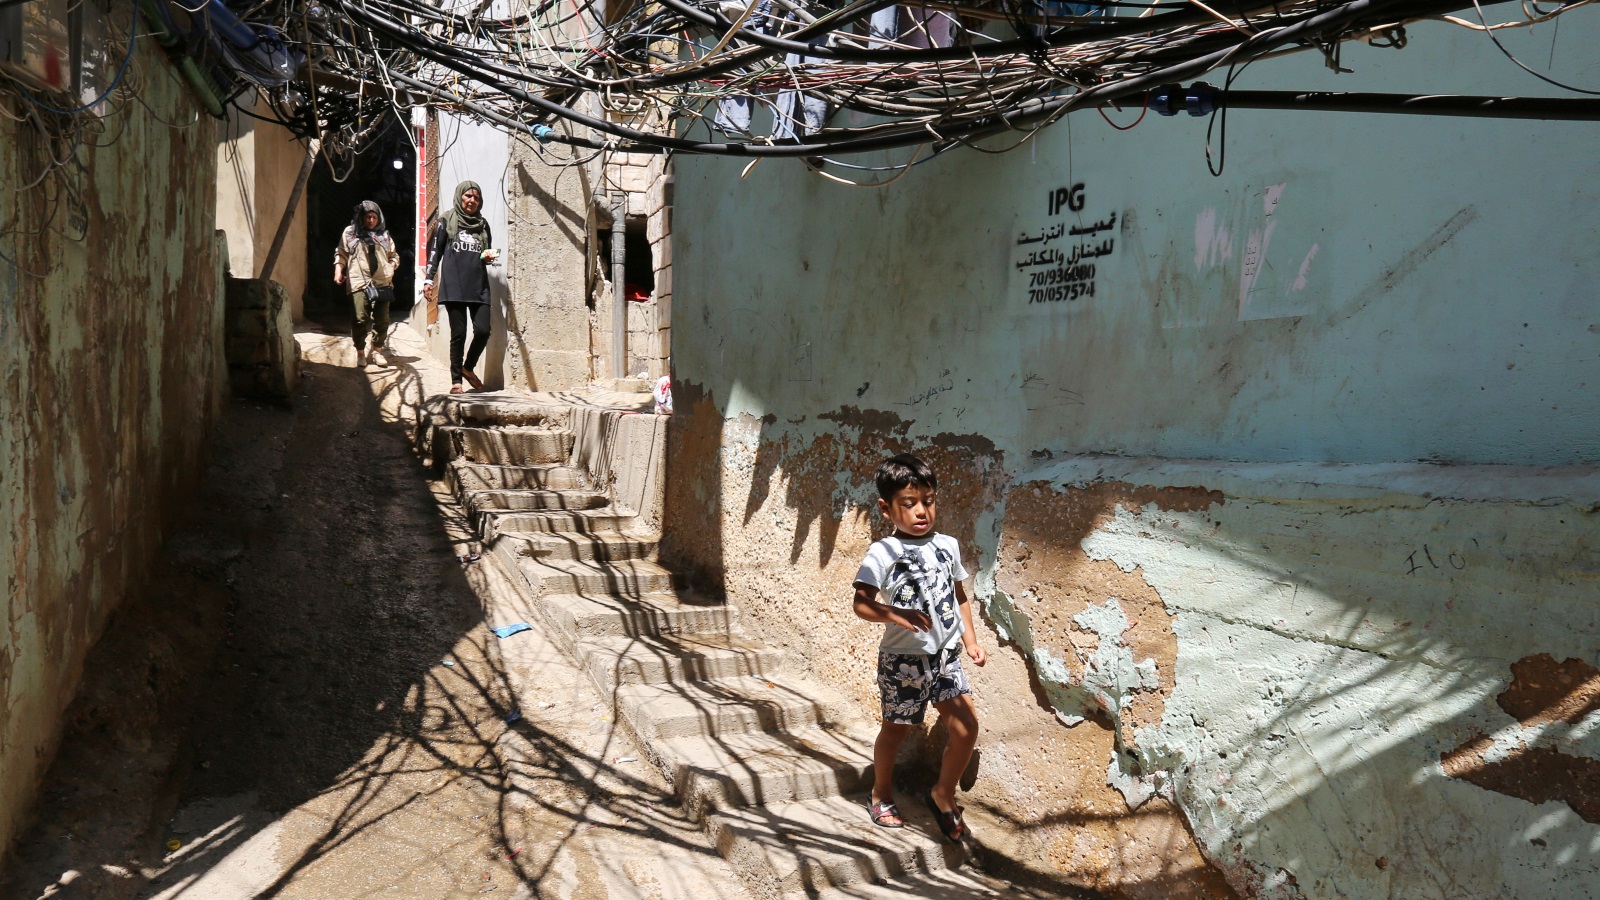 الدخل اليومي لآلاف الأسر الفلسطينية في المخيمات اللبنانية لا يتجاوز الدولارين حاليا (رويترز)